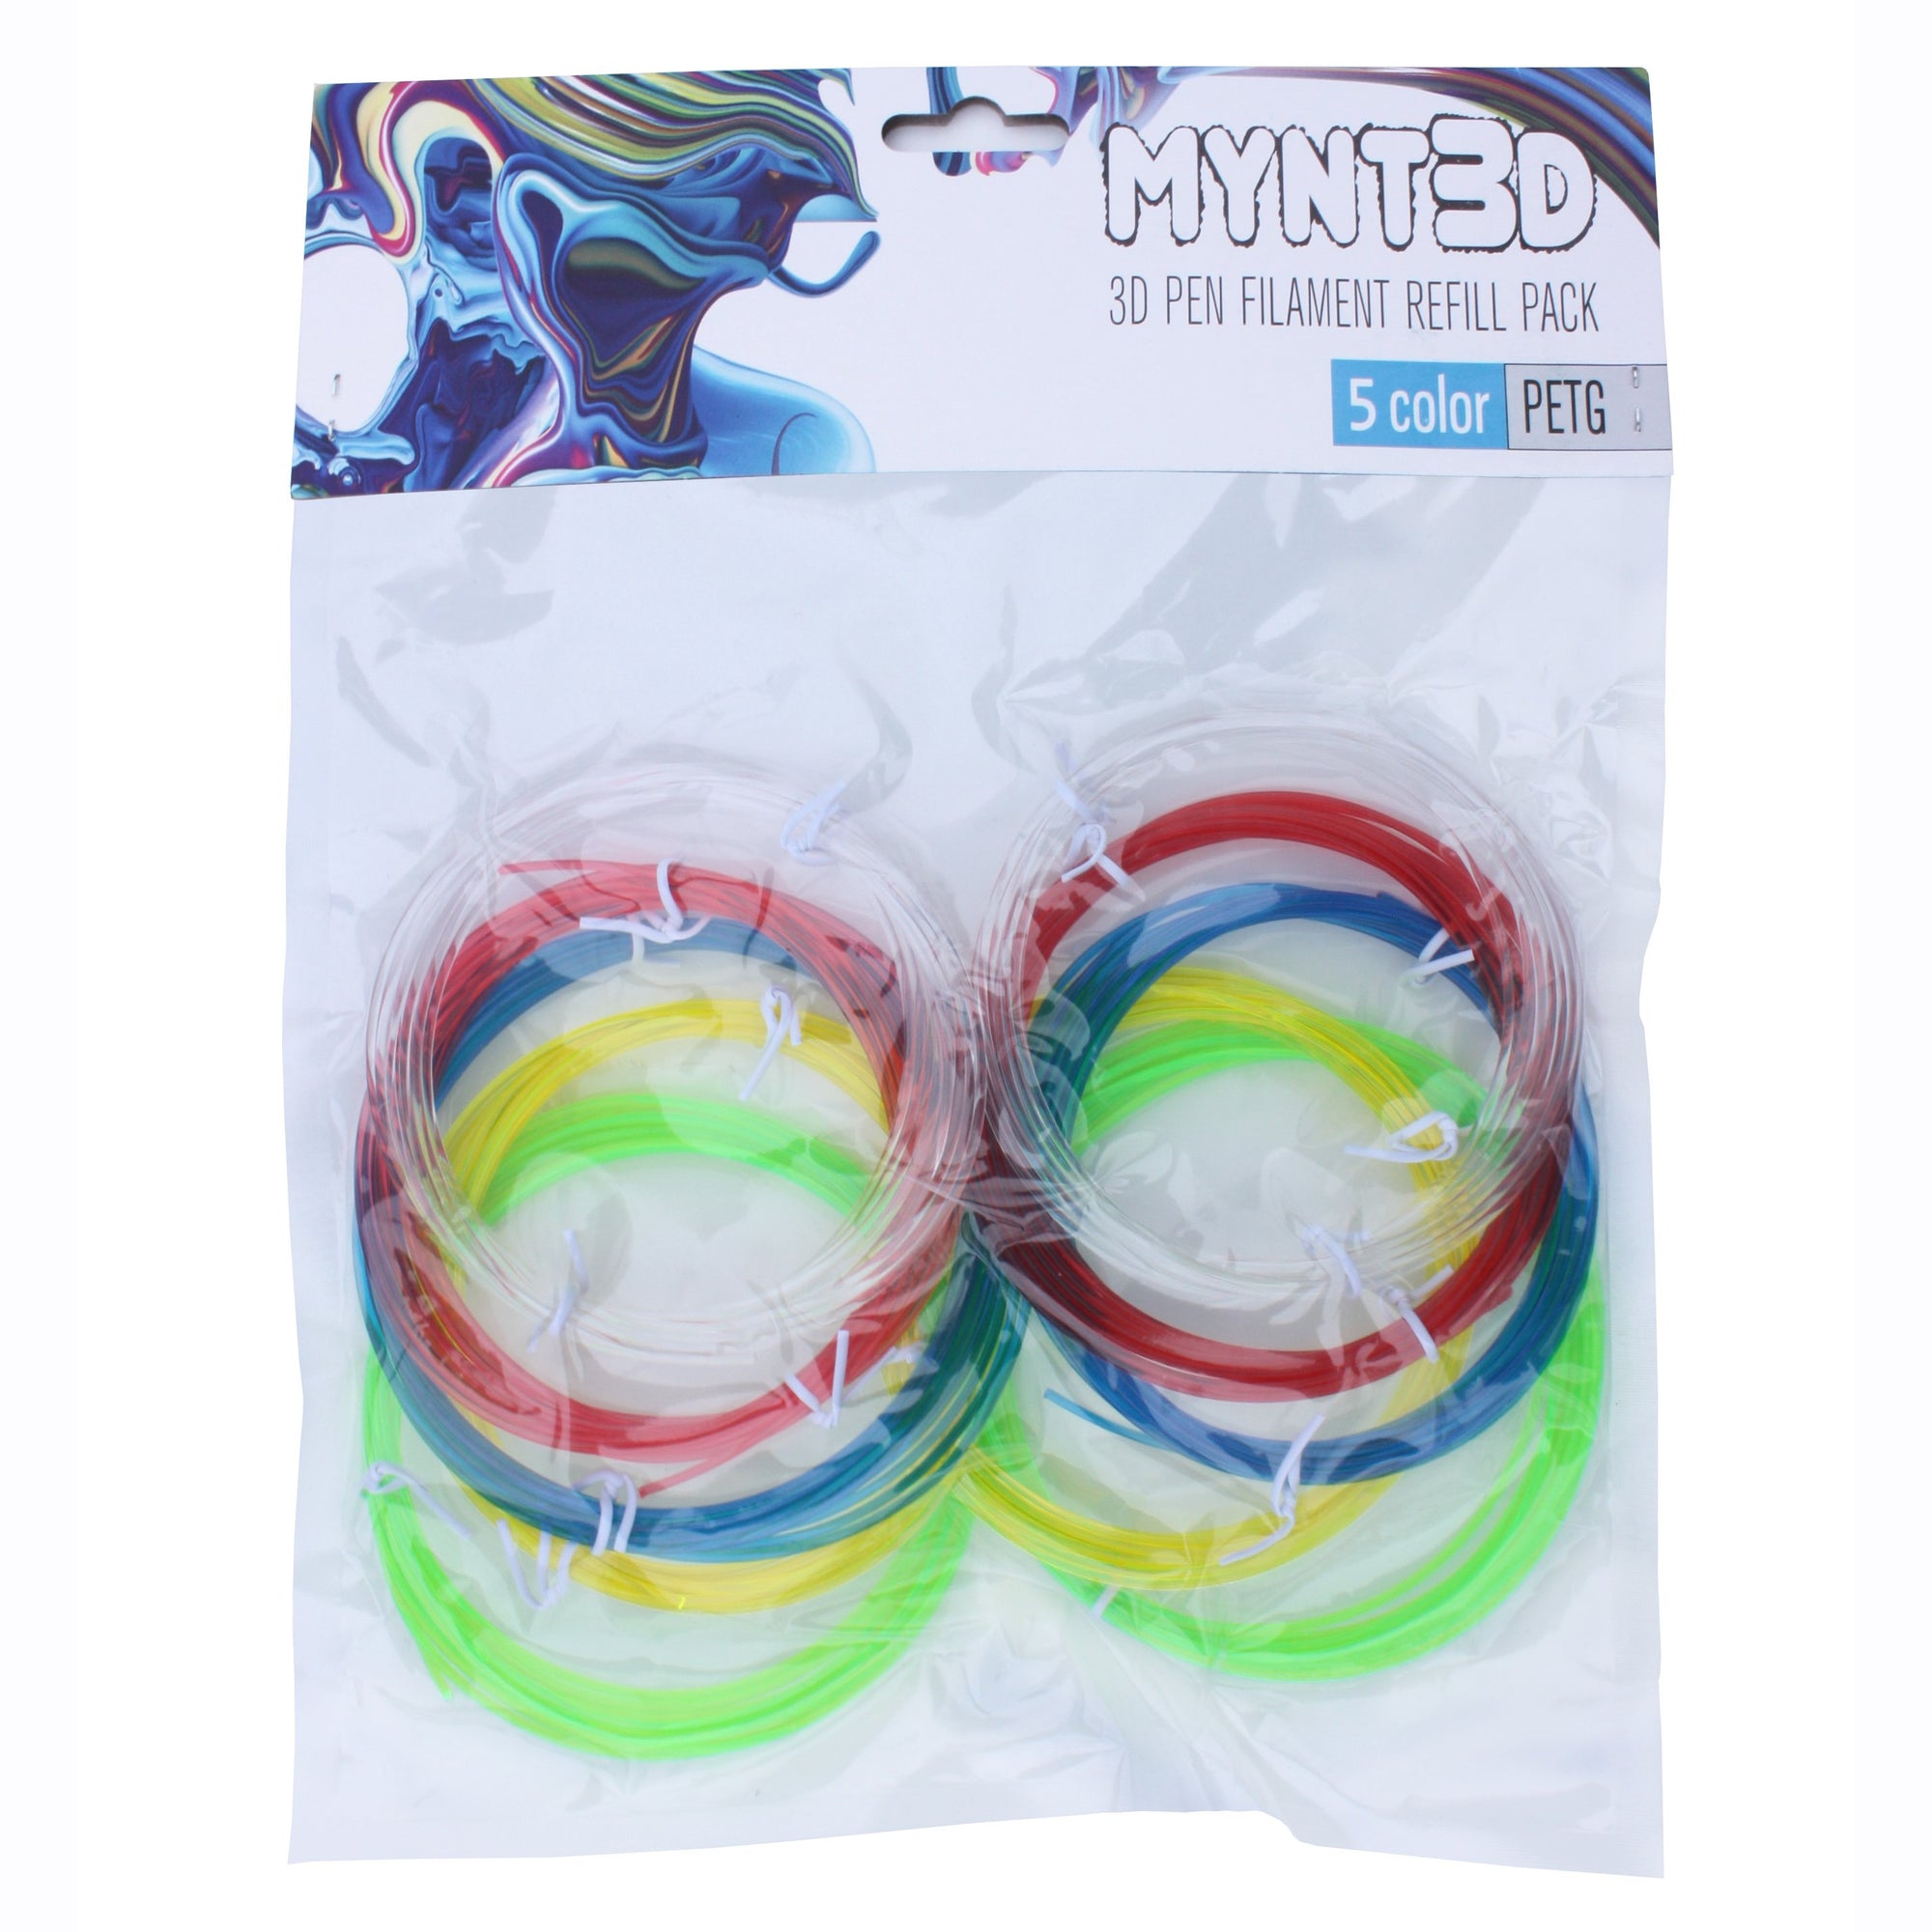 PETG Filament Refill Pack (5 colors, 6m each)